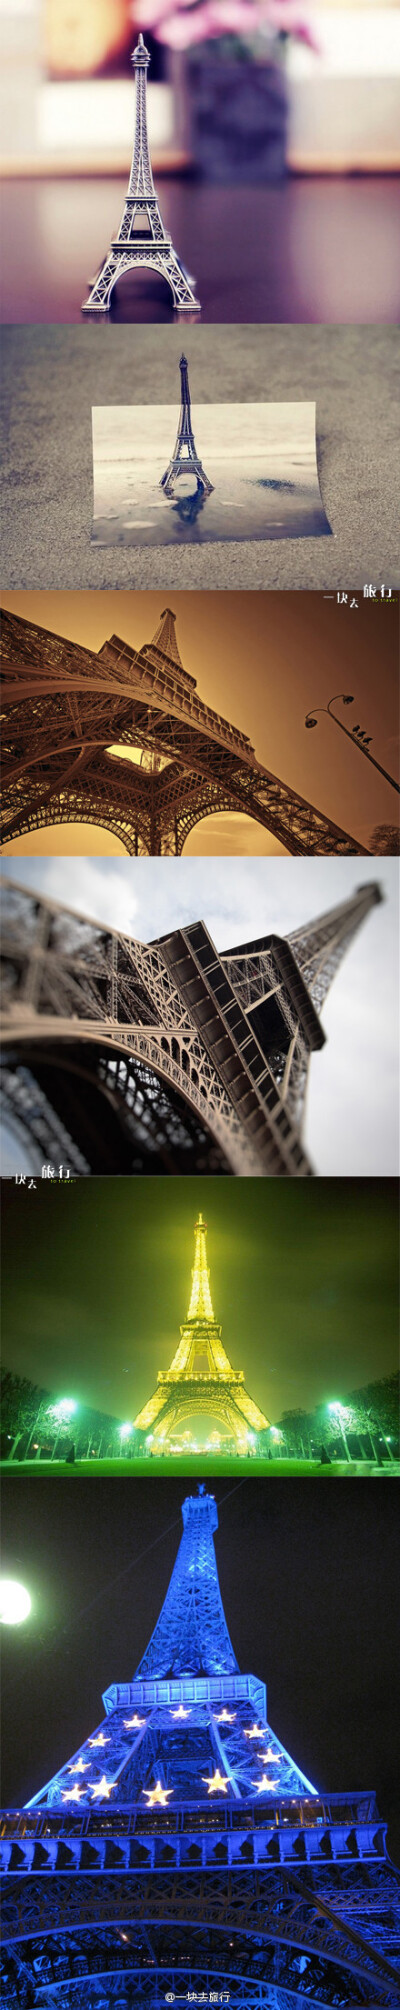 {帥氣戈戈}我的鐵塔夢~~埃菲尔铁塔（法语：La Tour Eiffel）~~~~ 埃菲尔铁塔~~~最浪漫的高度~~~~